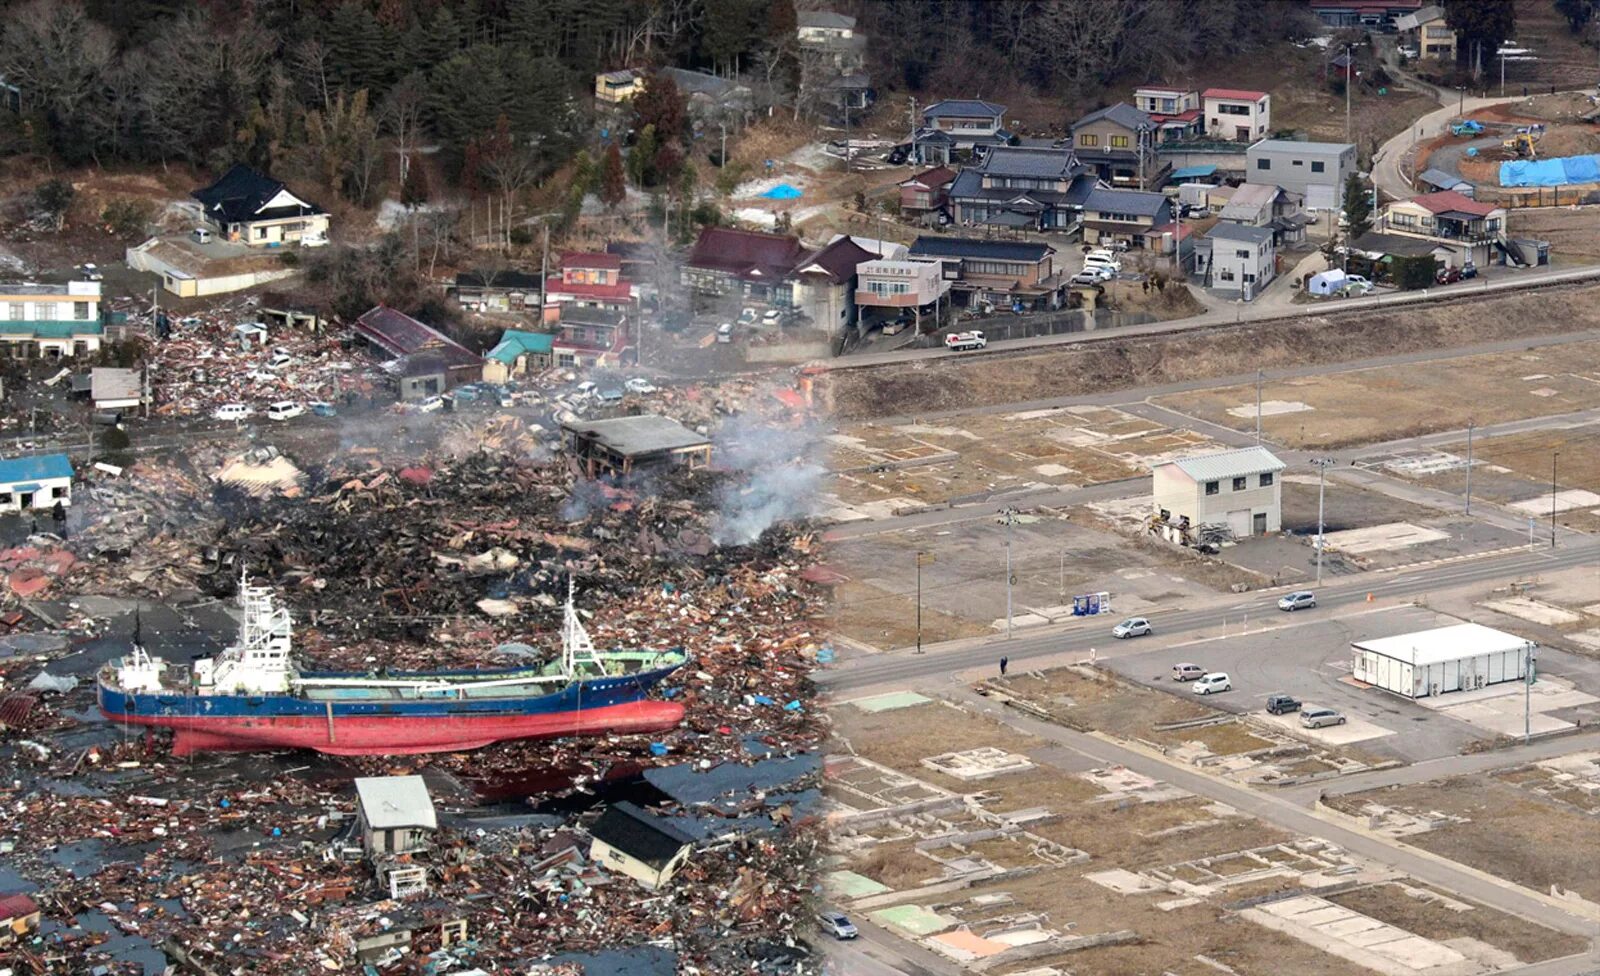 ЦУНАМИ В Японии в 2011. ЦУНАМИ ЦУНАМИ В Японии 2011. Землетрясение Тохоку 2011. Землетрясение Фукусима 2011 ЦУНАМИ. Самые катастрофические землетрясения